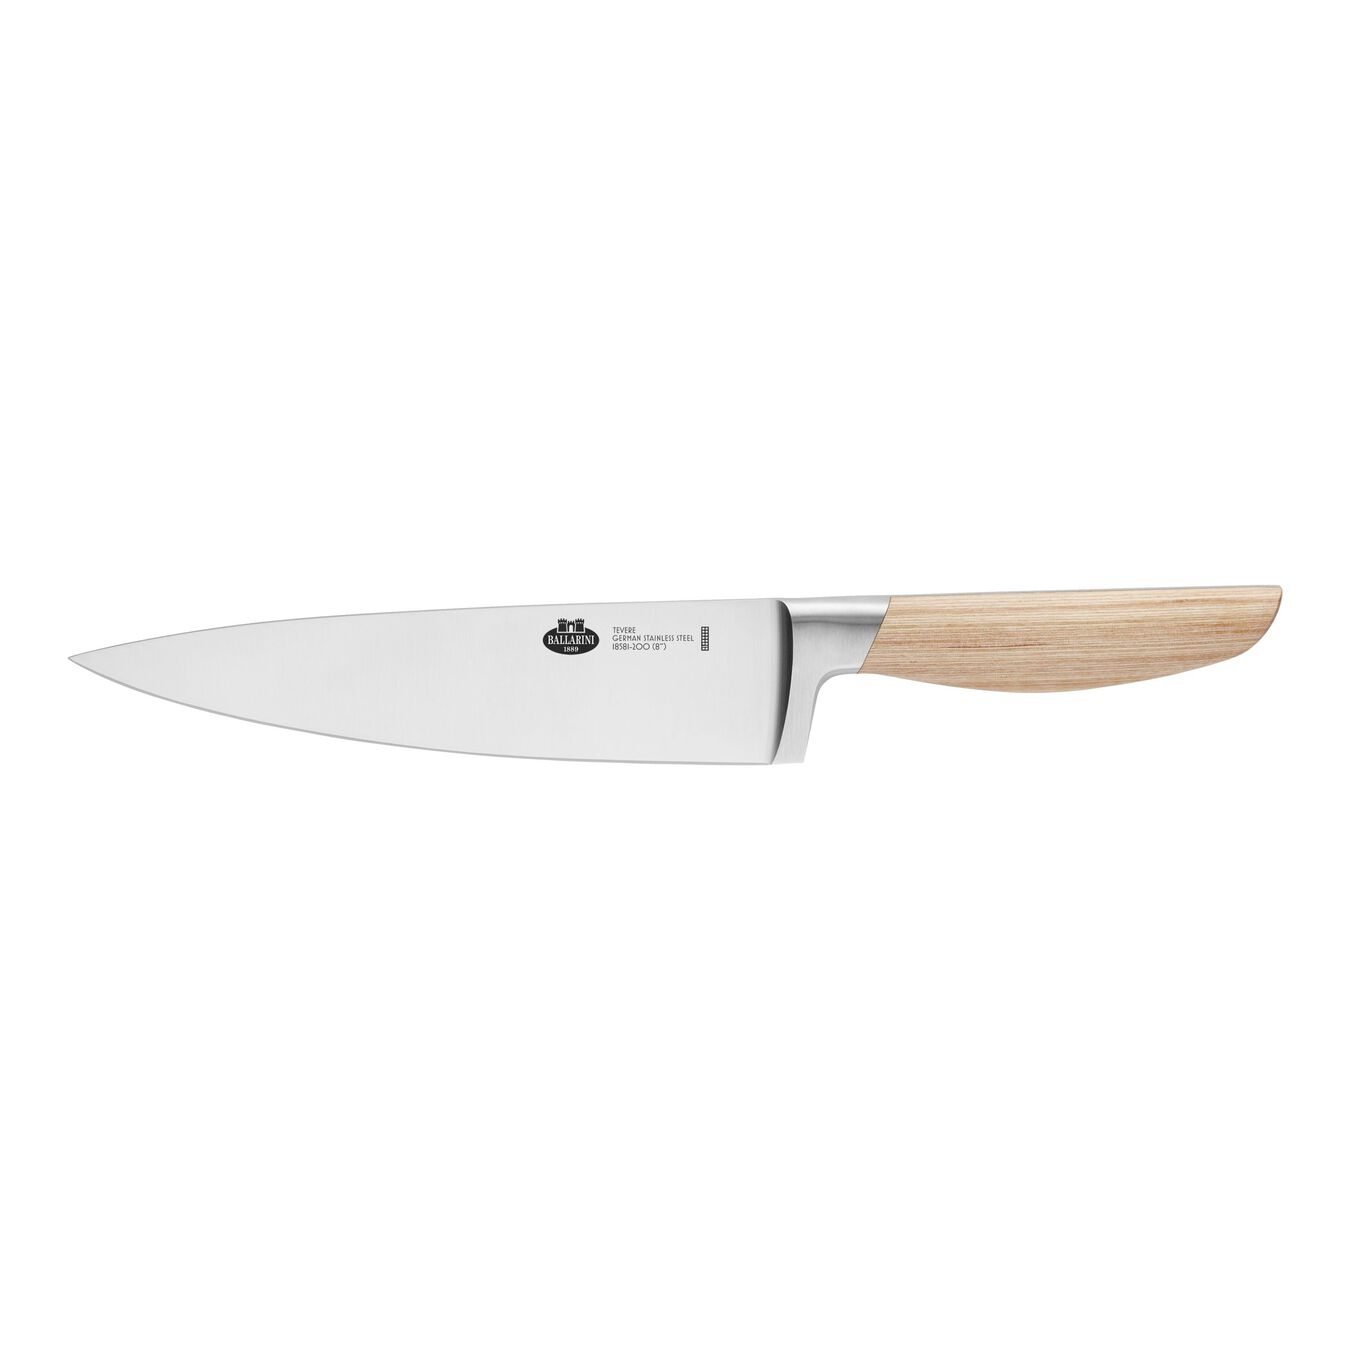 7-pcs natural rubberwood Knife block set,,large 9